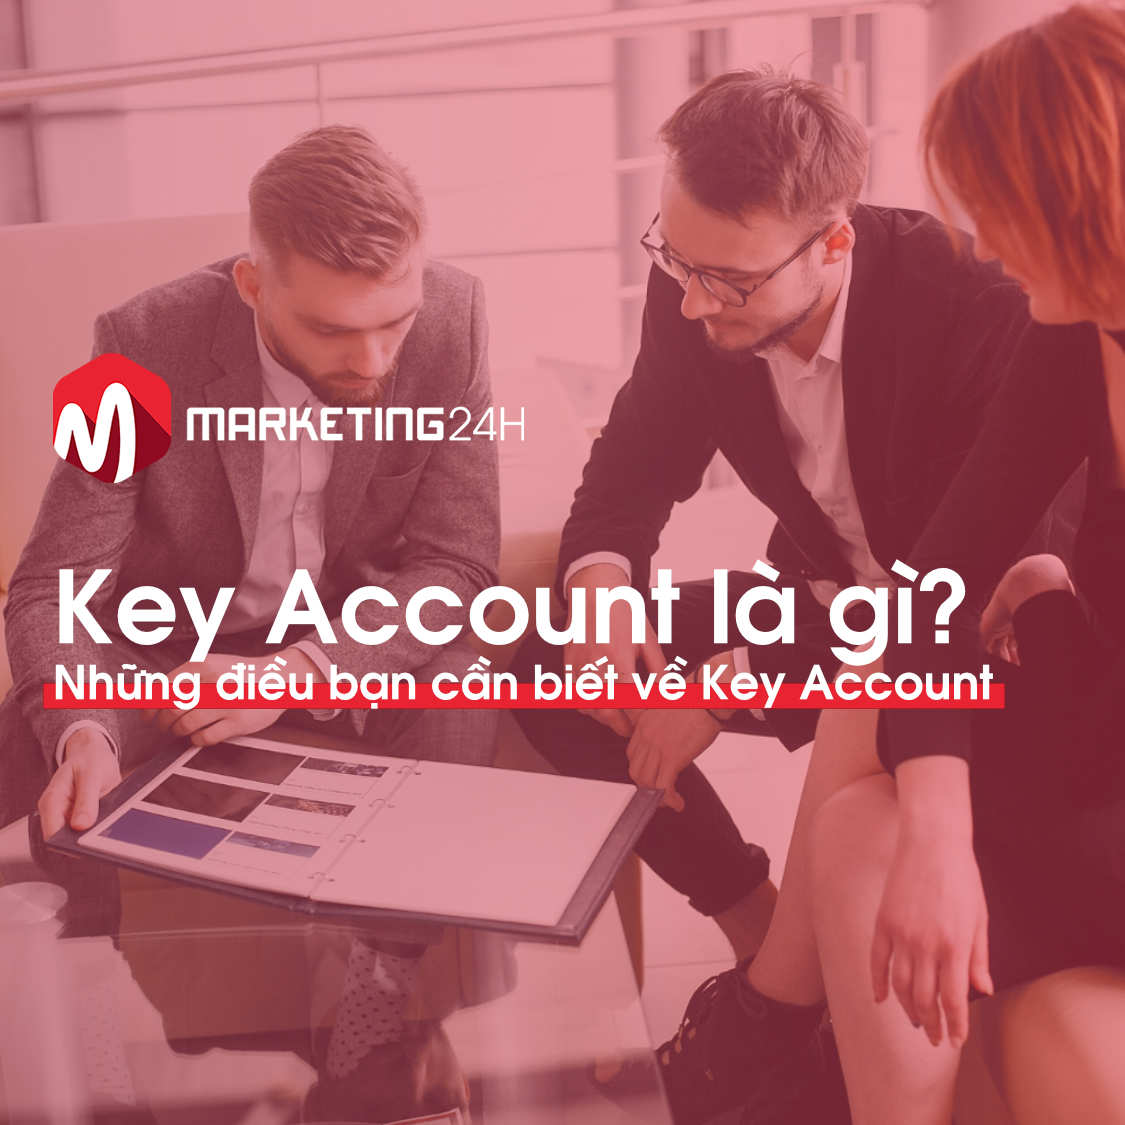 Giải đáp thắc mắc: Key Account là gì? Các vấn đề liên quan Key Account